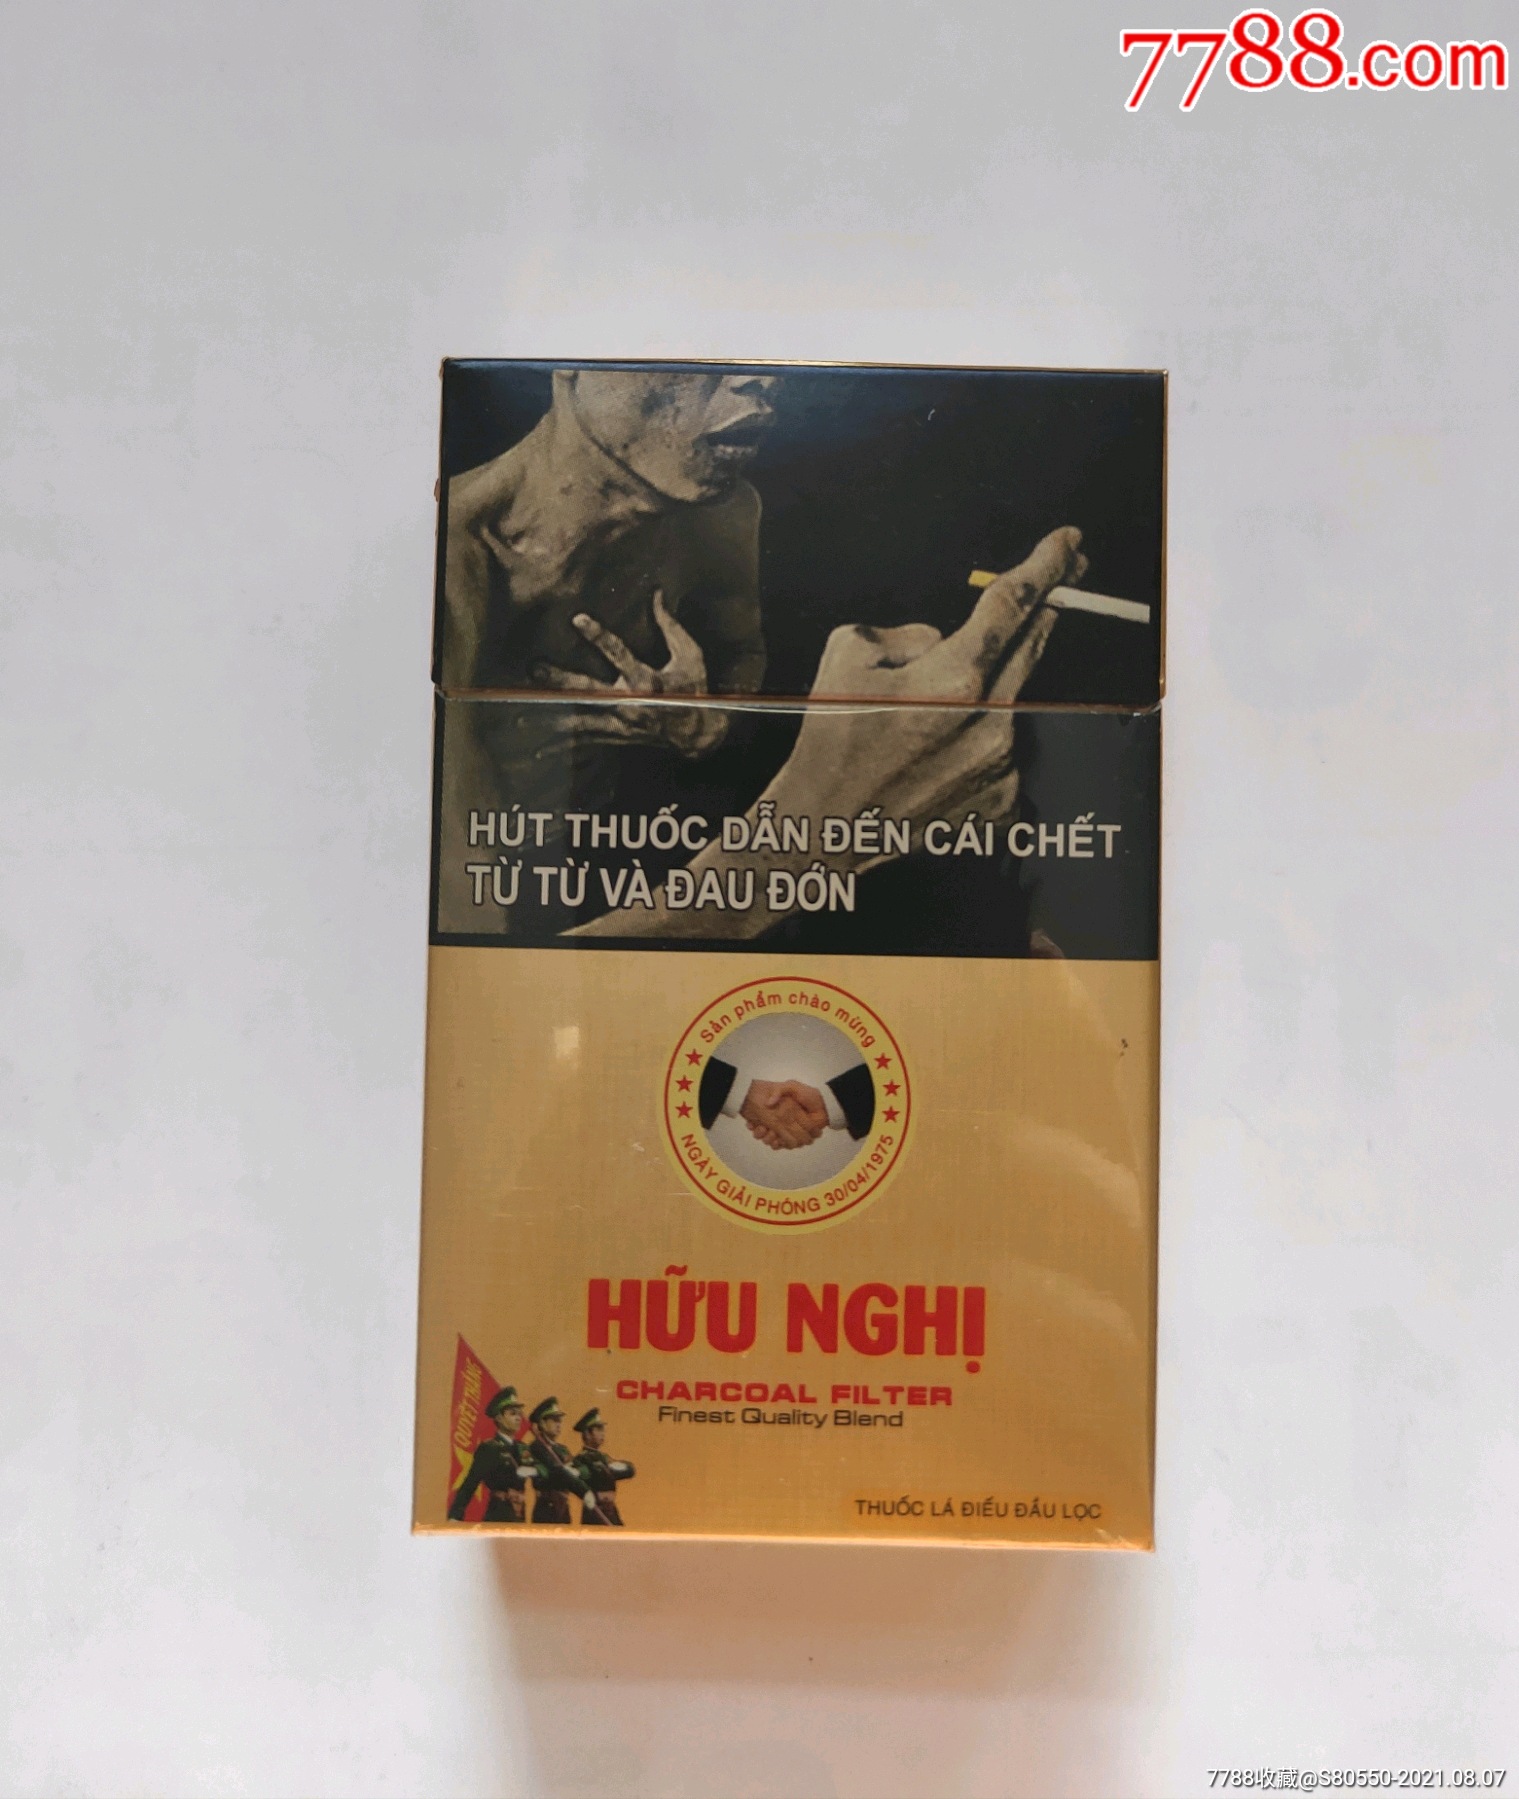 越南香烟图片及价格图片